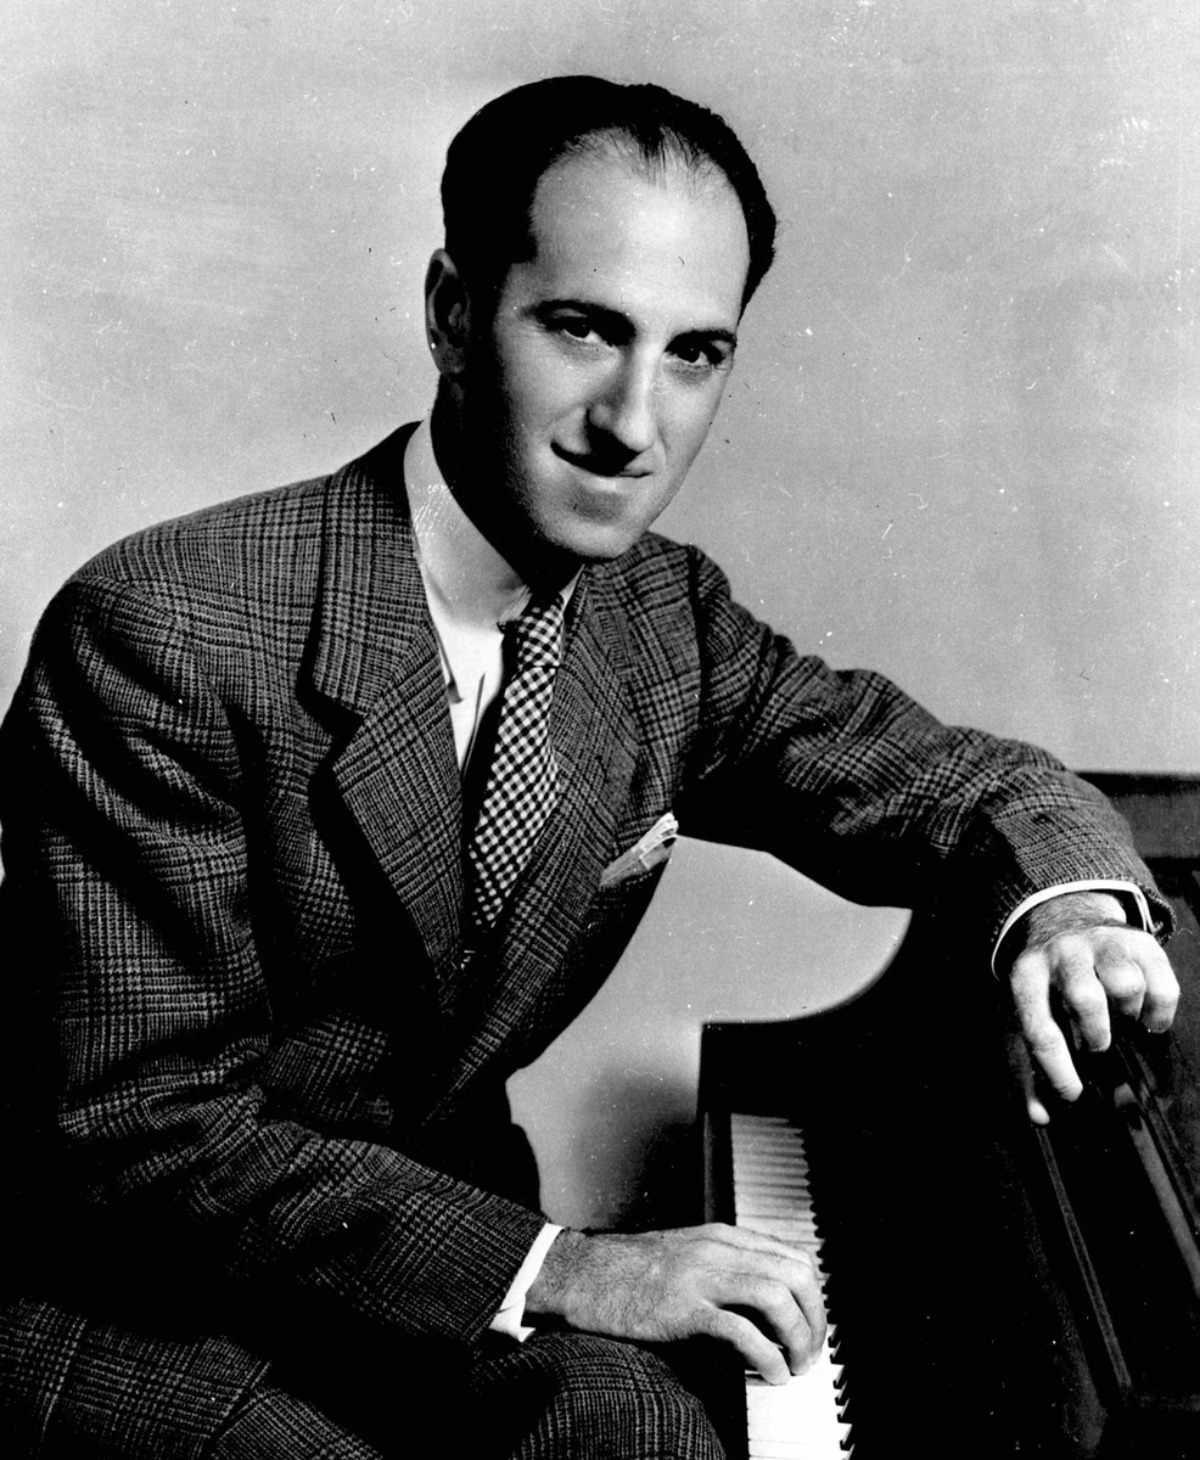 Compositor George Gershwin